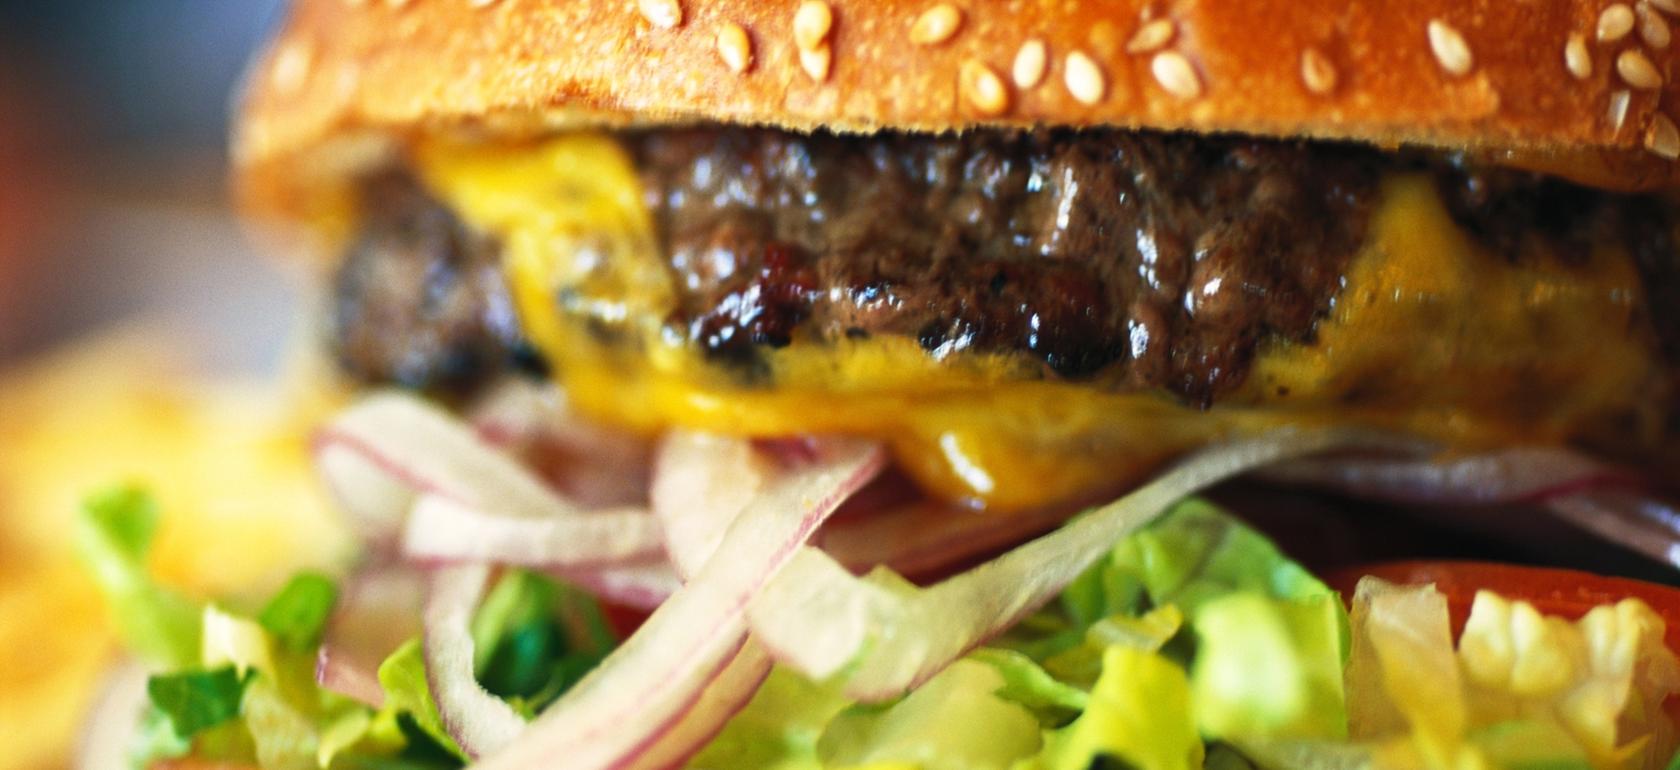 Auch den klassischen Hamburger gibt es im Angebot der Food Trucks.